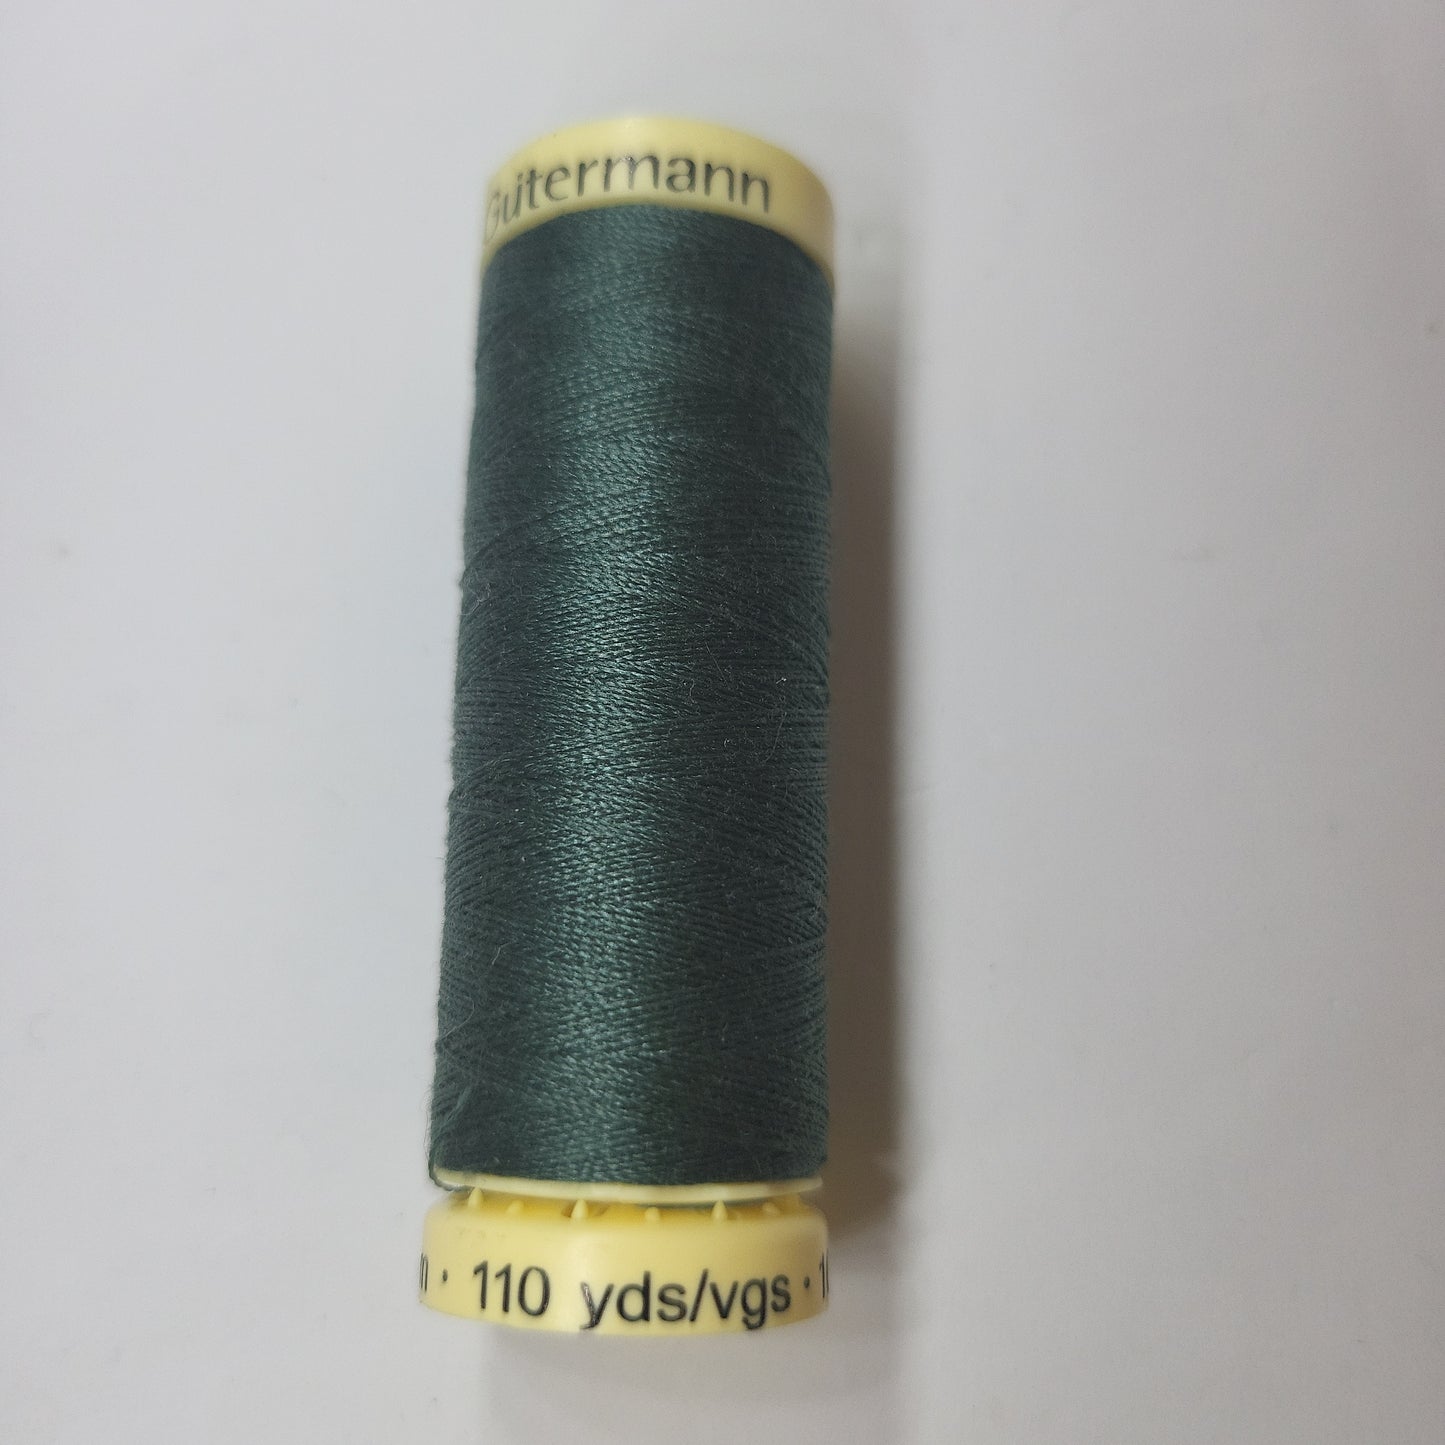 302 Sew-All Thread